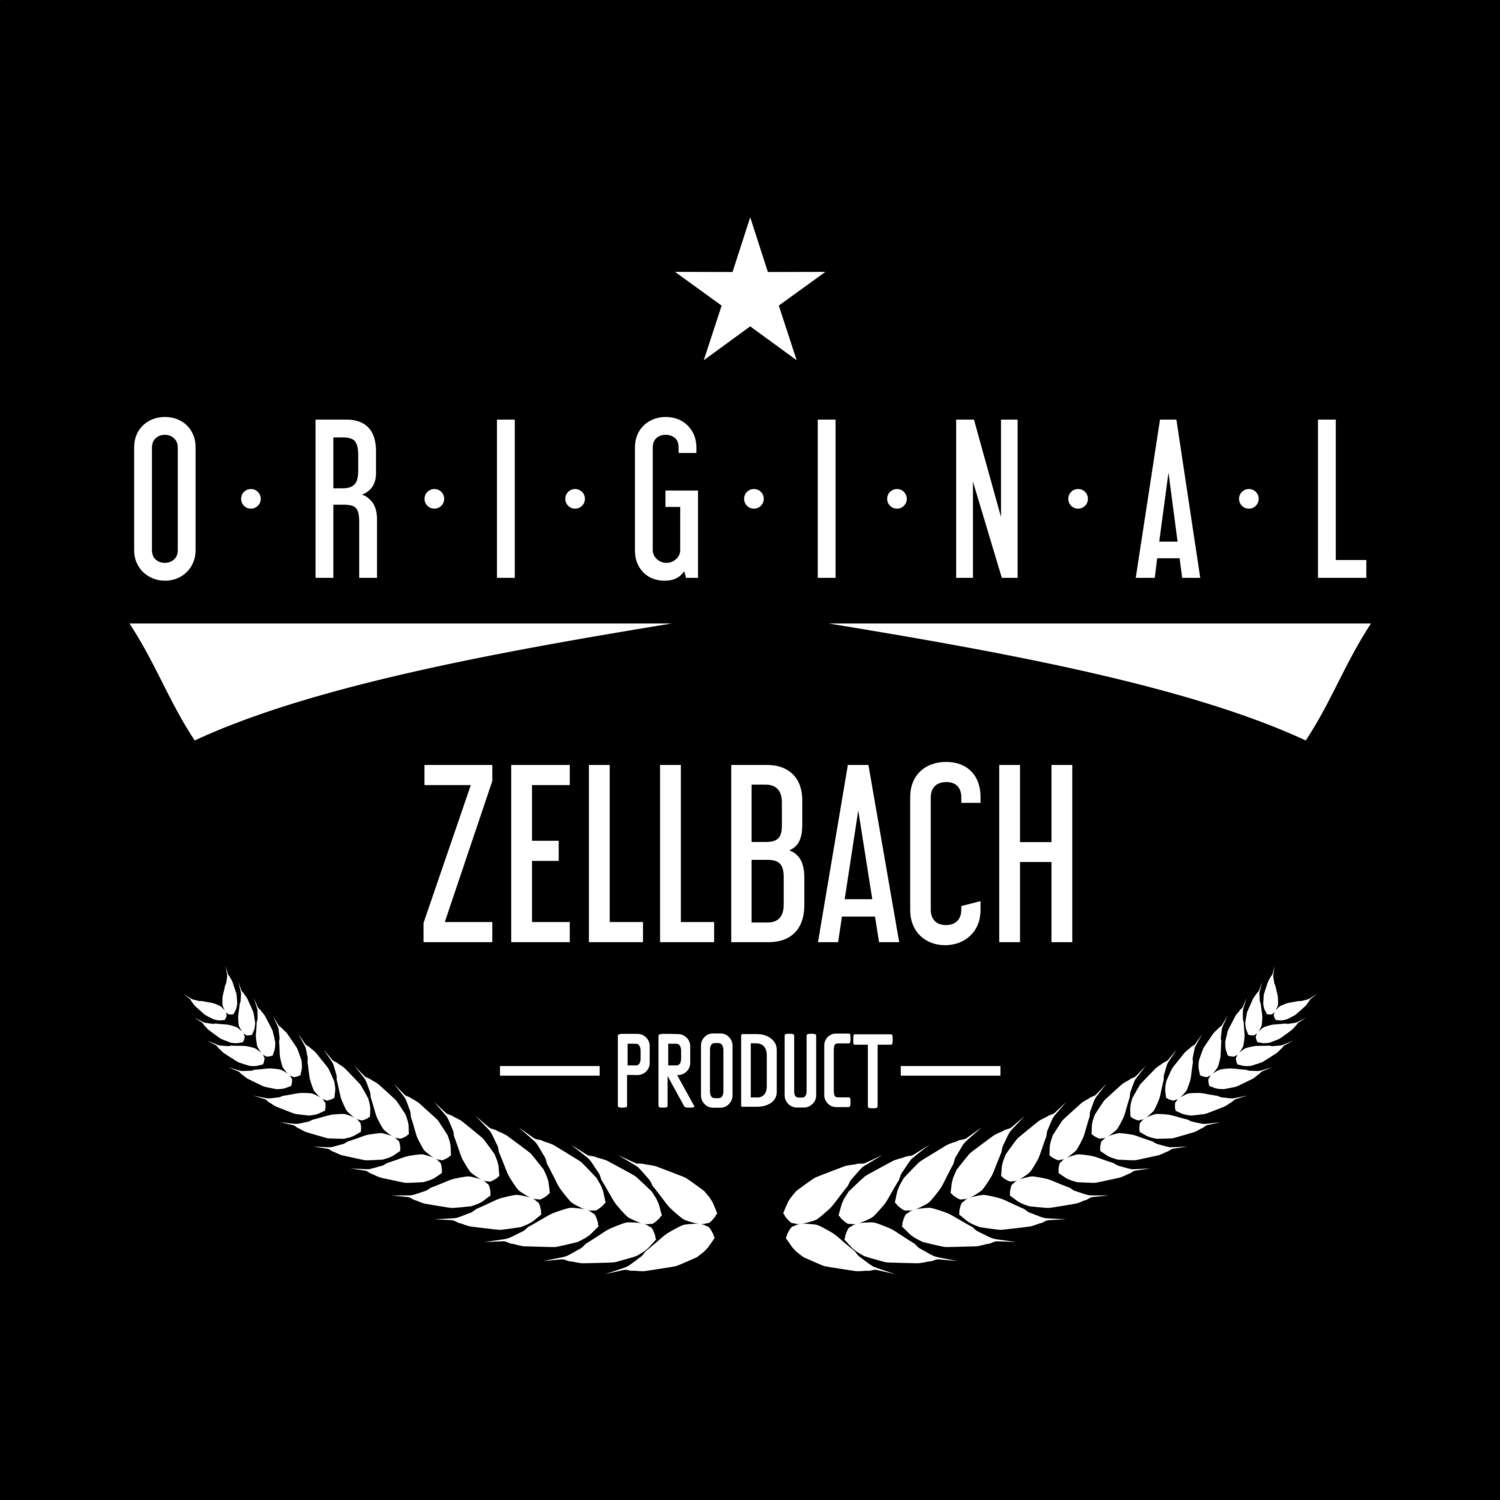 Zellbach T-Shirt »Original Product«